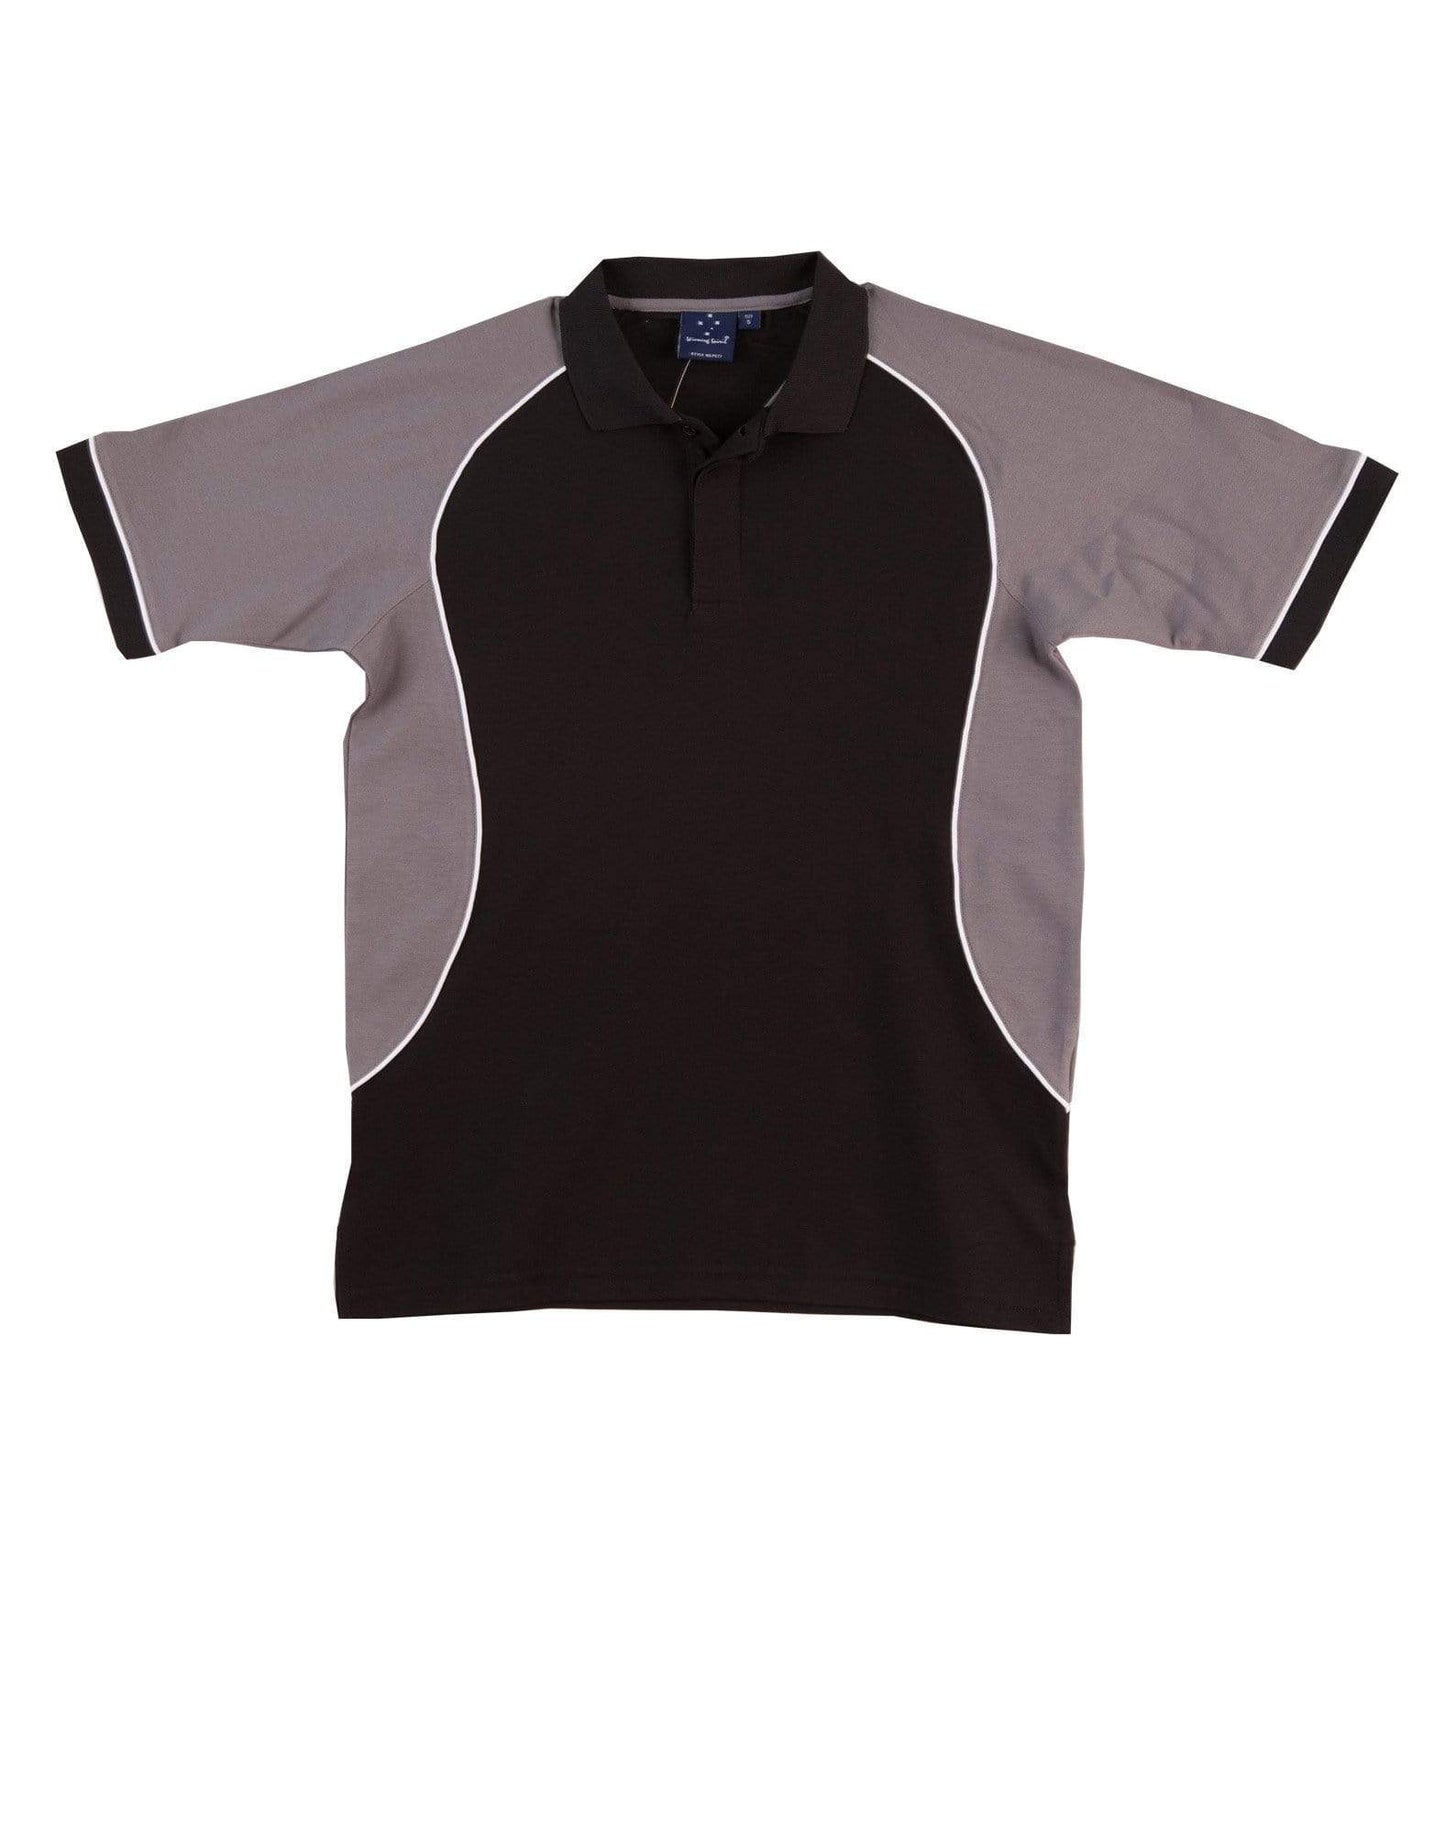 Winning Spirit Casual Wear Black/White/Grey / S Winning Spirit Arena Polo Shirt  Men's Ps77